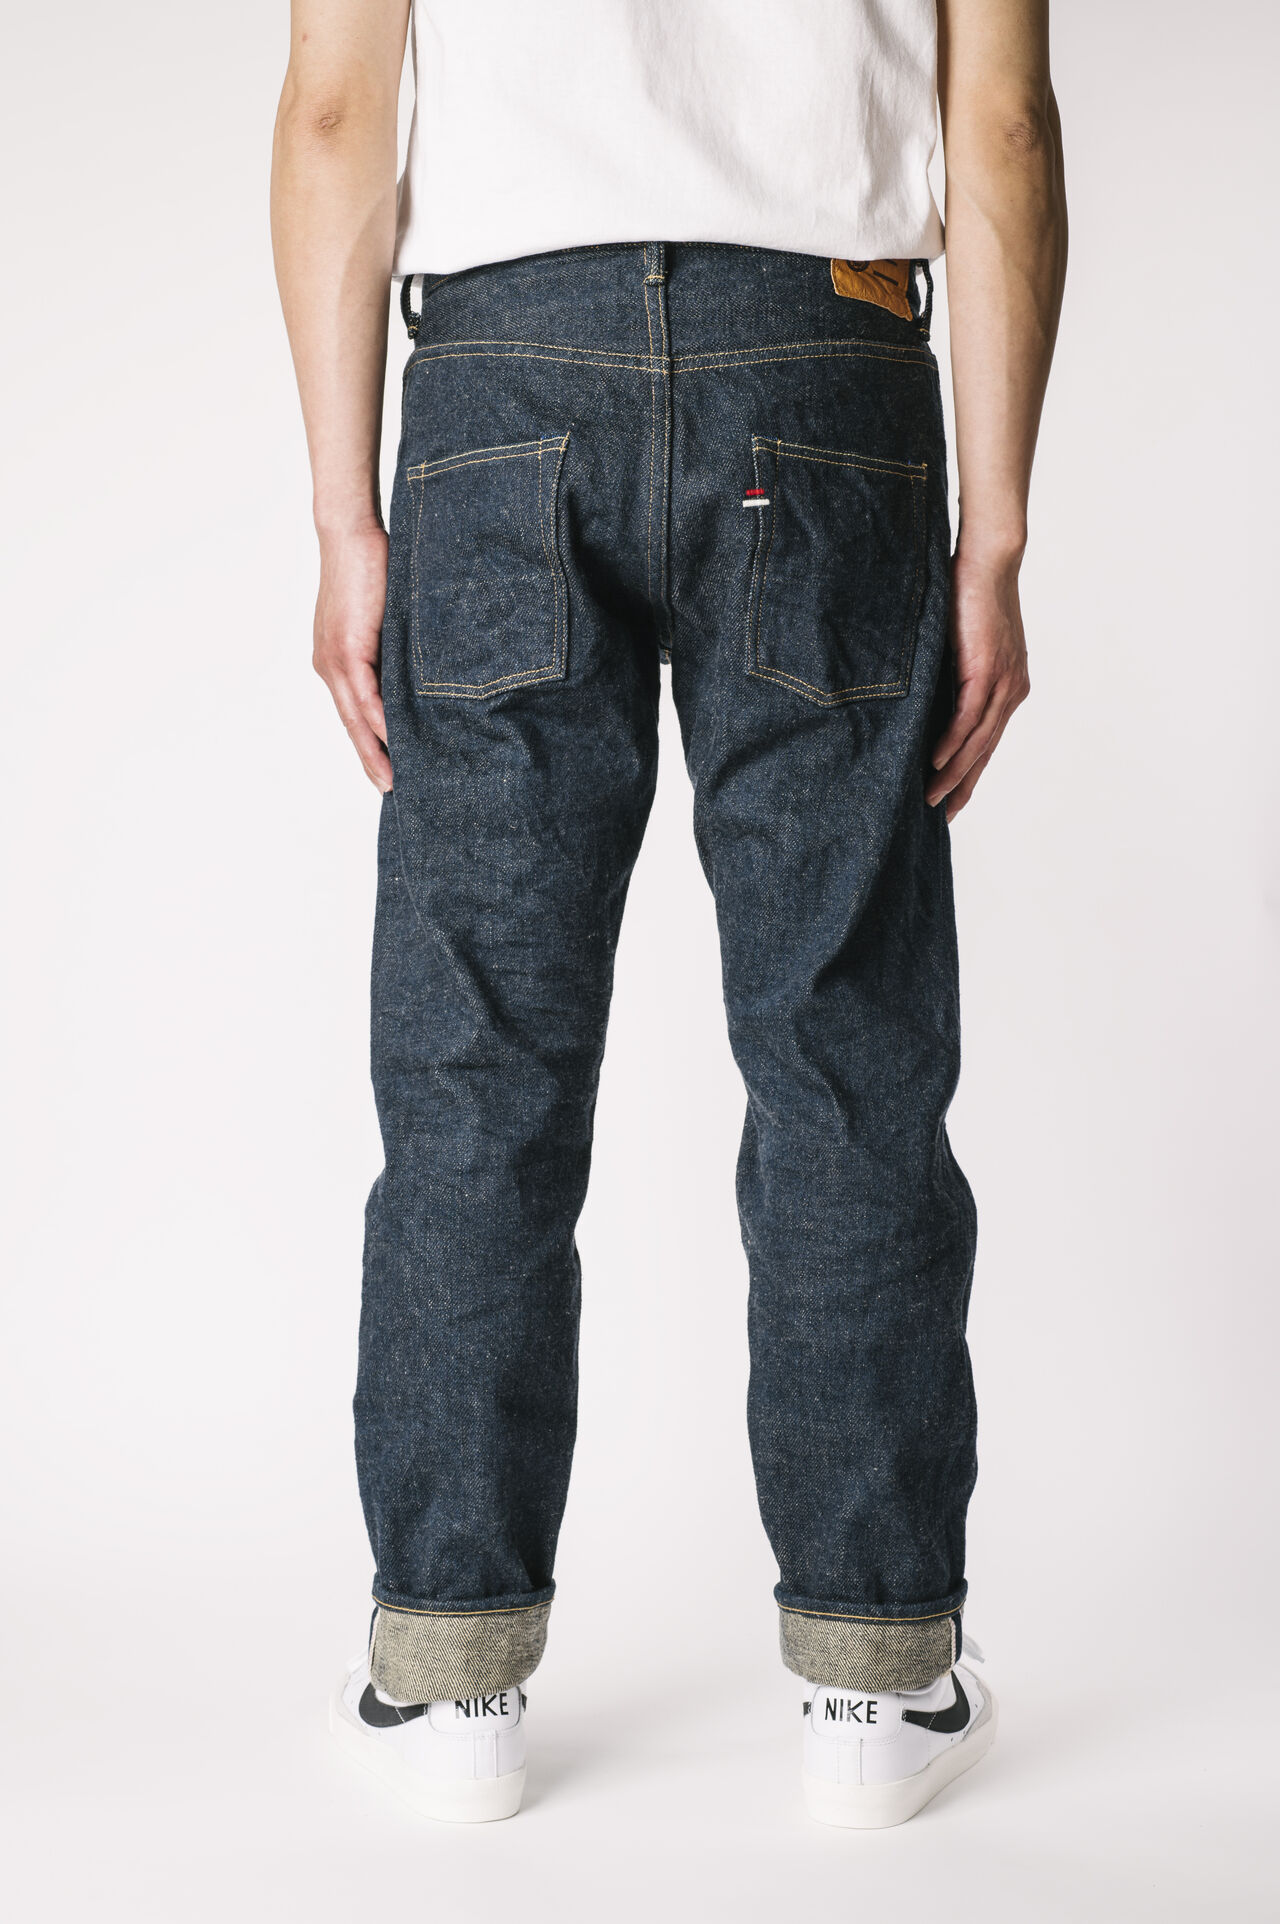 OTHT ONI x TANUKI Collaboration 21.5oz Secret Denim High Rise Tapered Jeans,, large image number 1